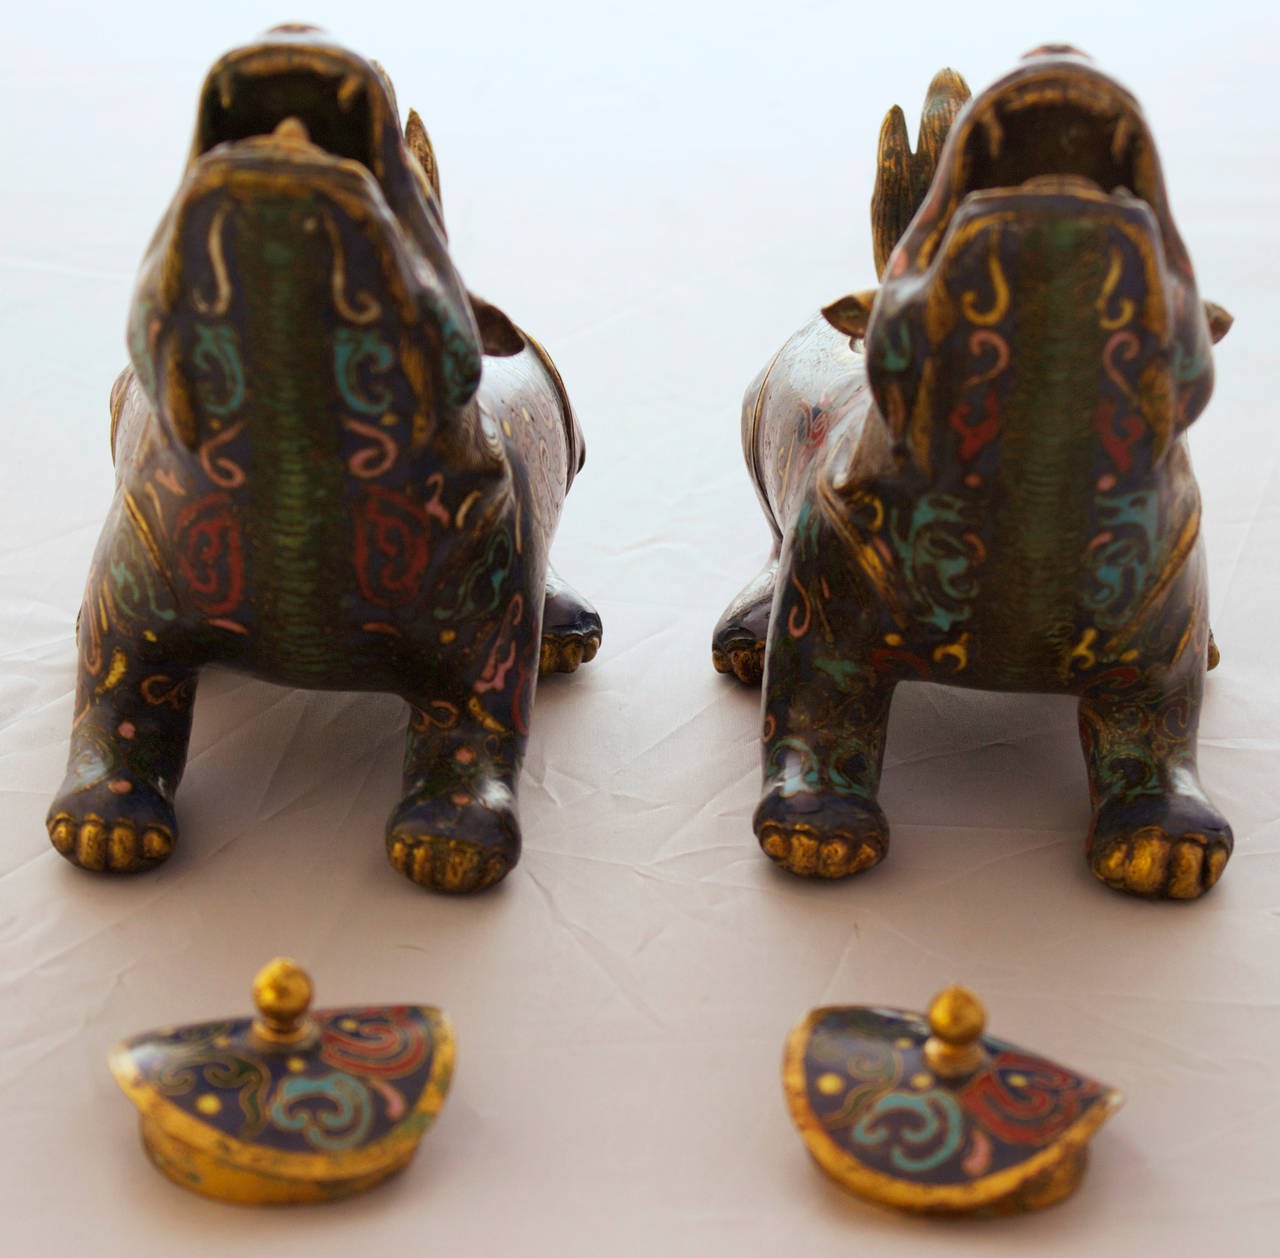 Cloissoné Pair of Chinese Cloisonné Bronze Figural Censers